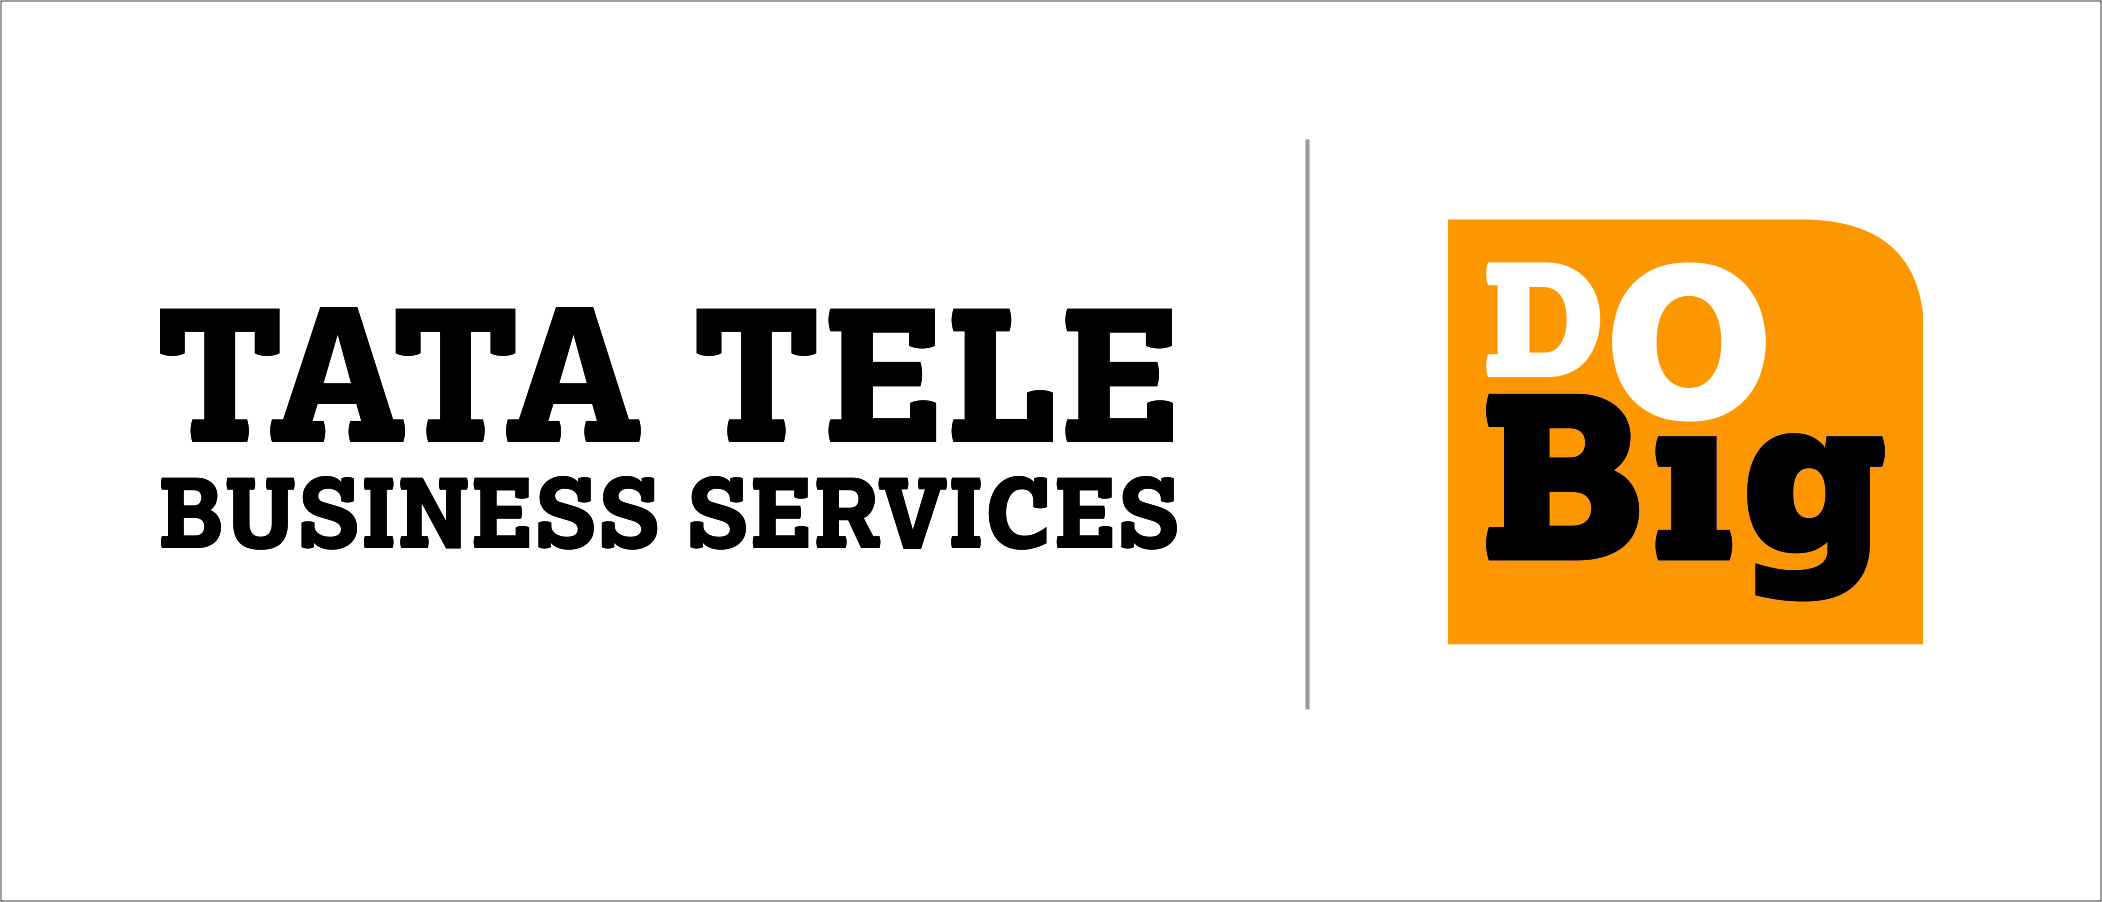 Tata Tele services